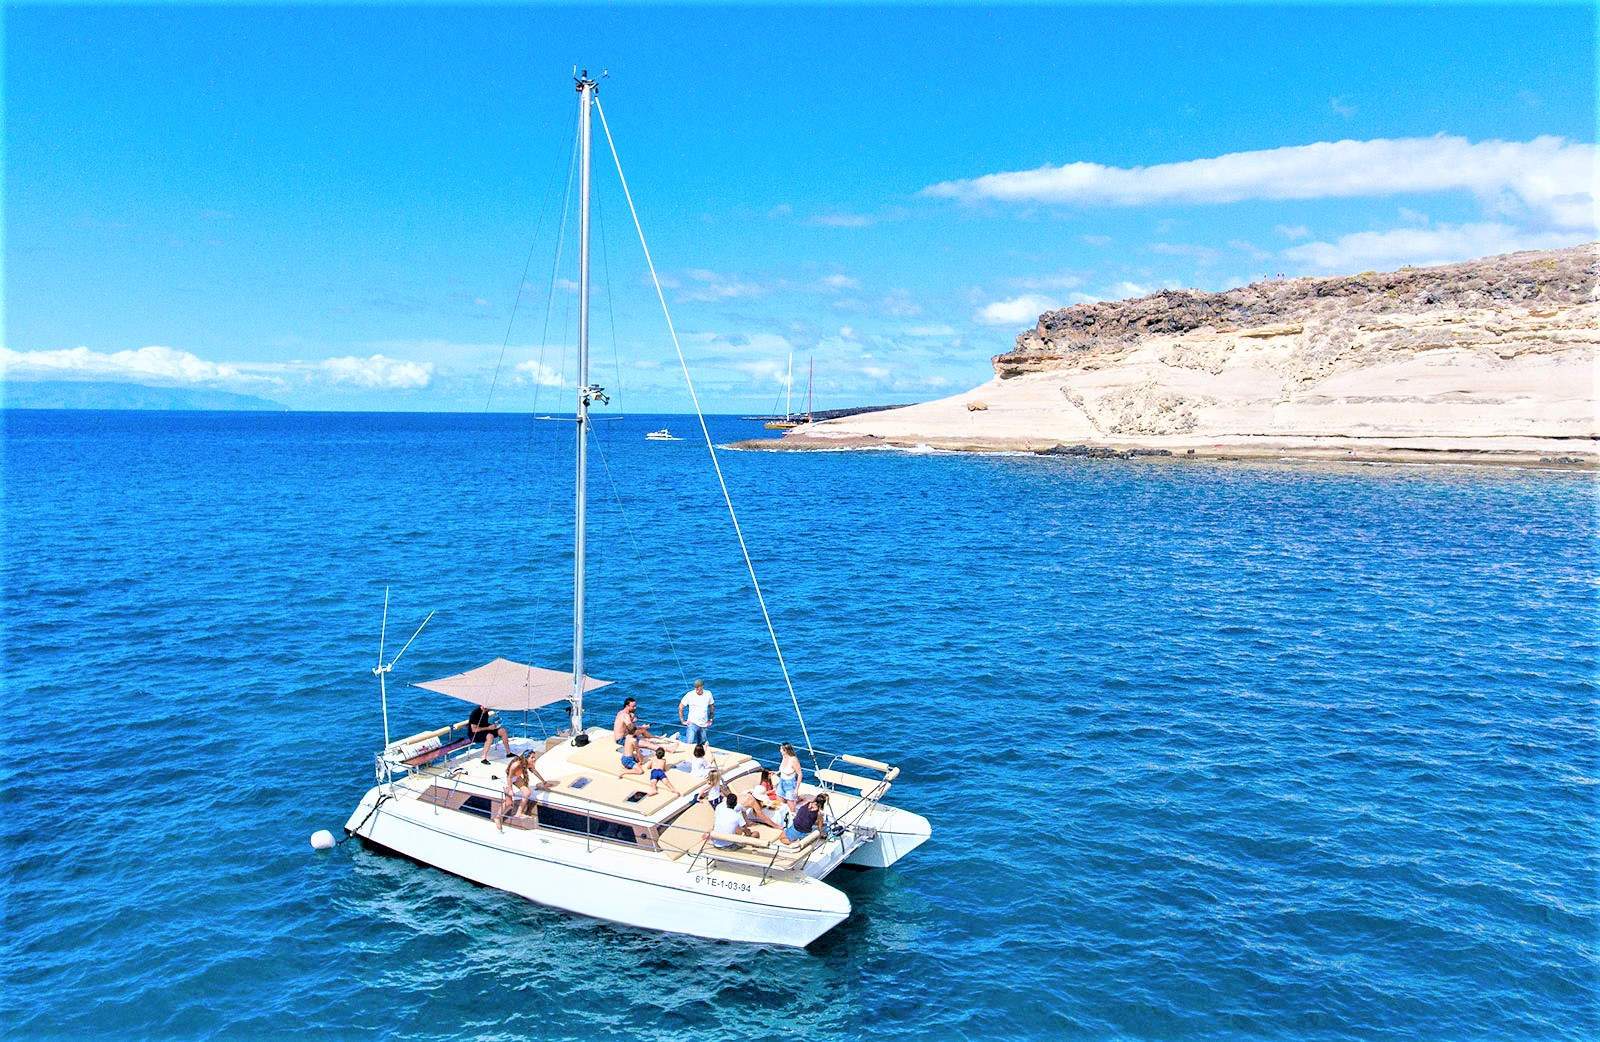 Ruime catamaran charter in Tenerife Zuid voor max. 11 personen